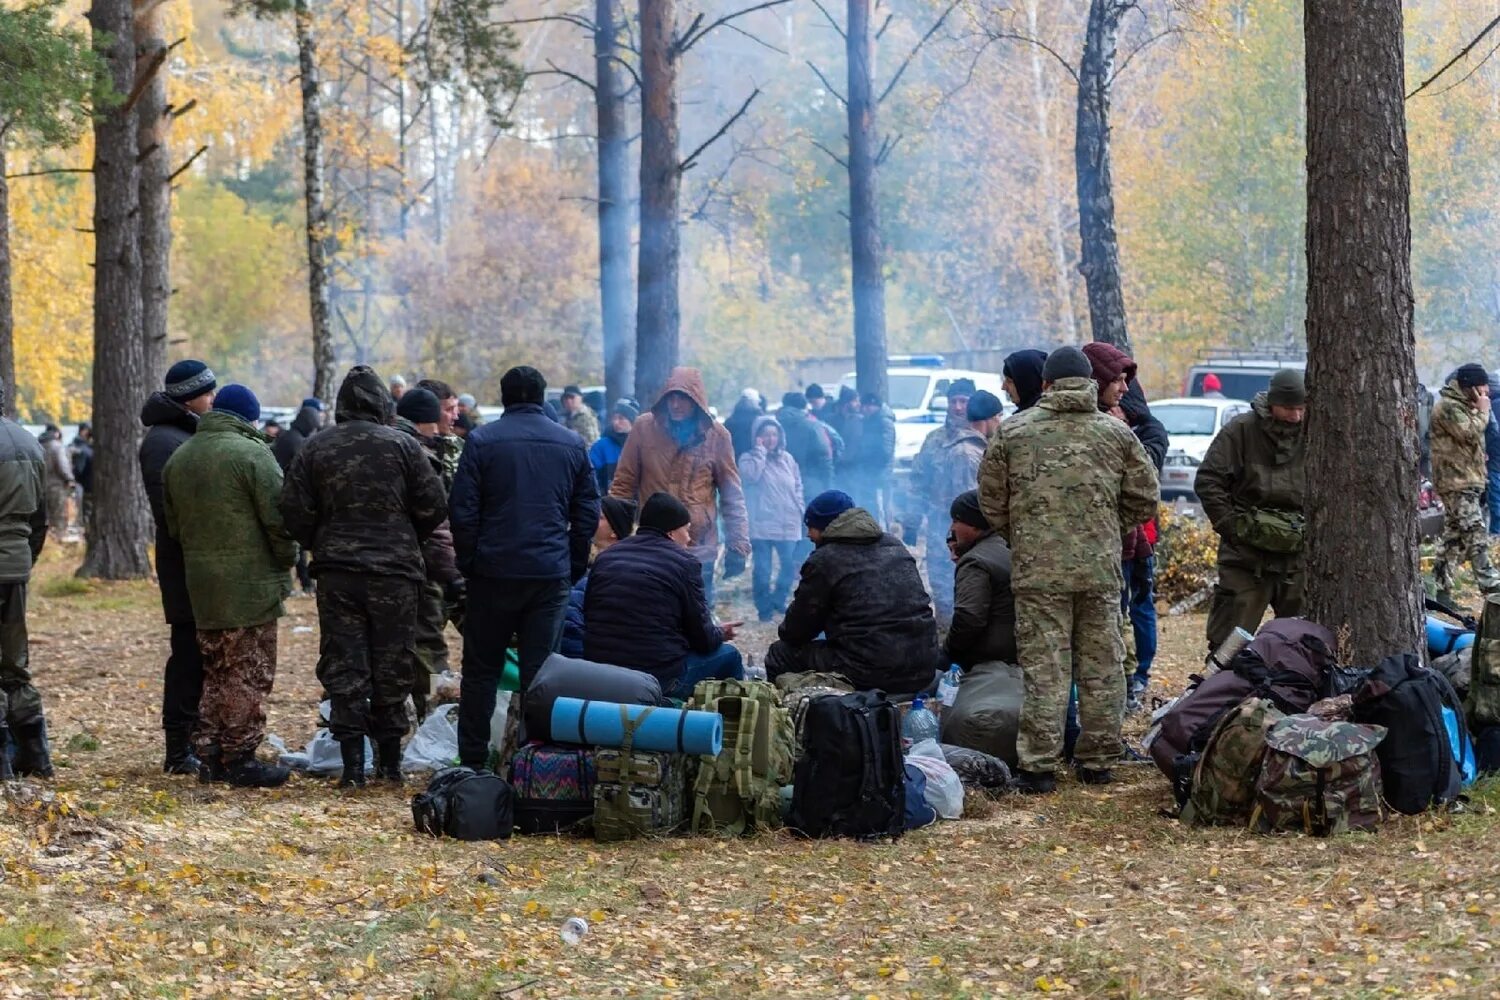 Мобилизация сборы. Мобилизация в Новосибирске. Мобилизация фото со сборов. Участники спецоперации. Демобилизация мобилизованных свежие новости на сегодня